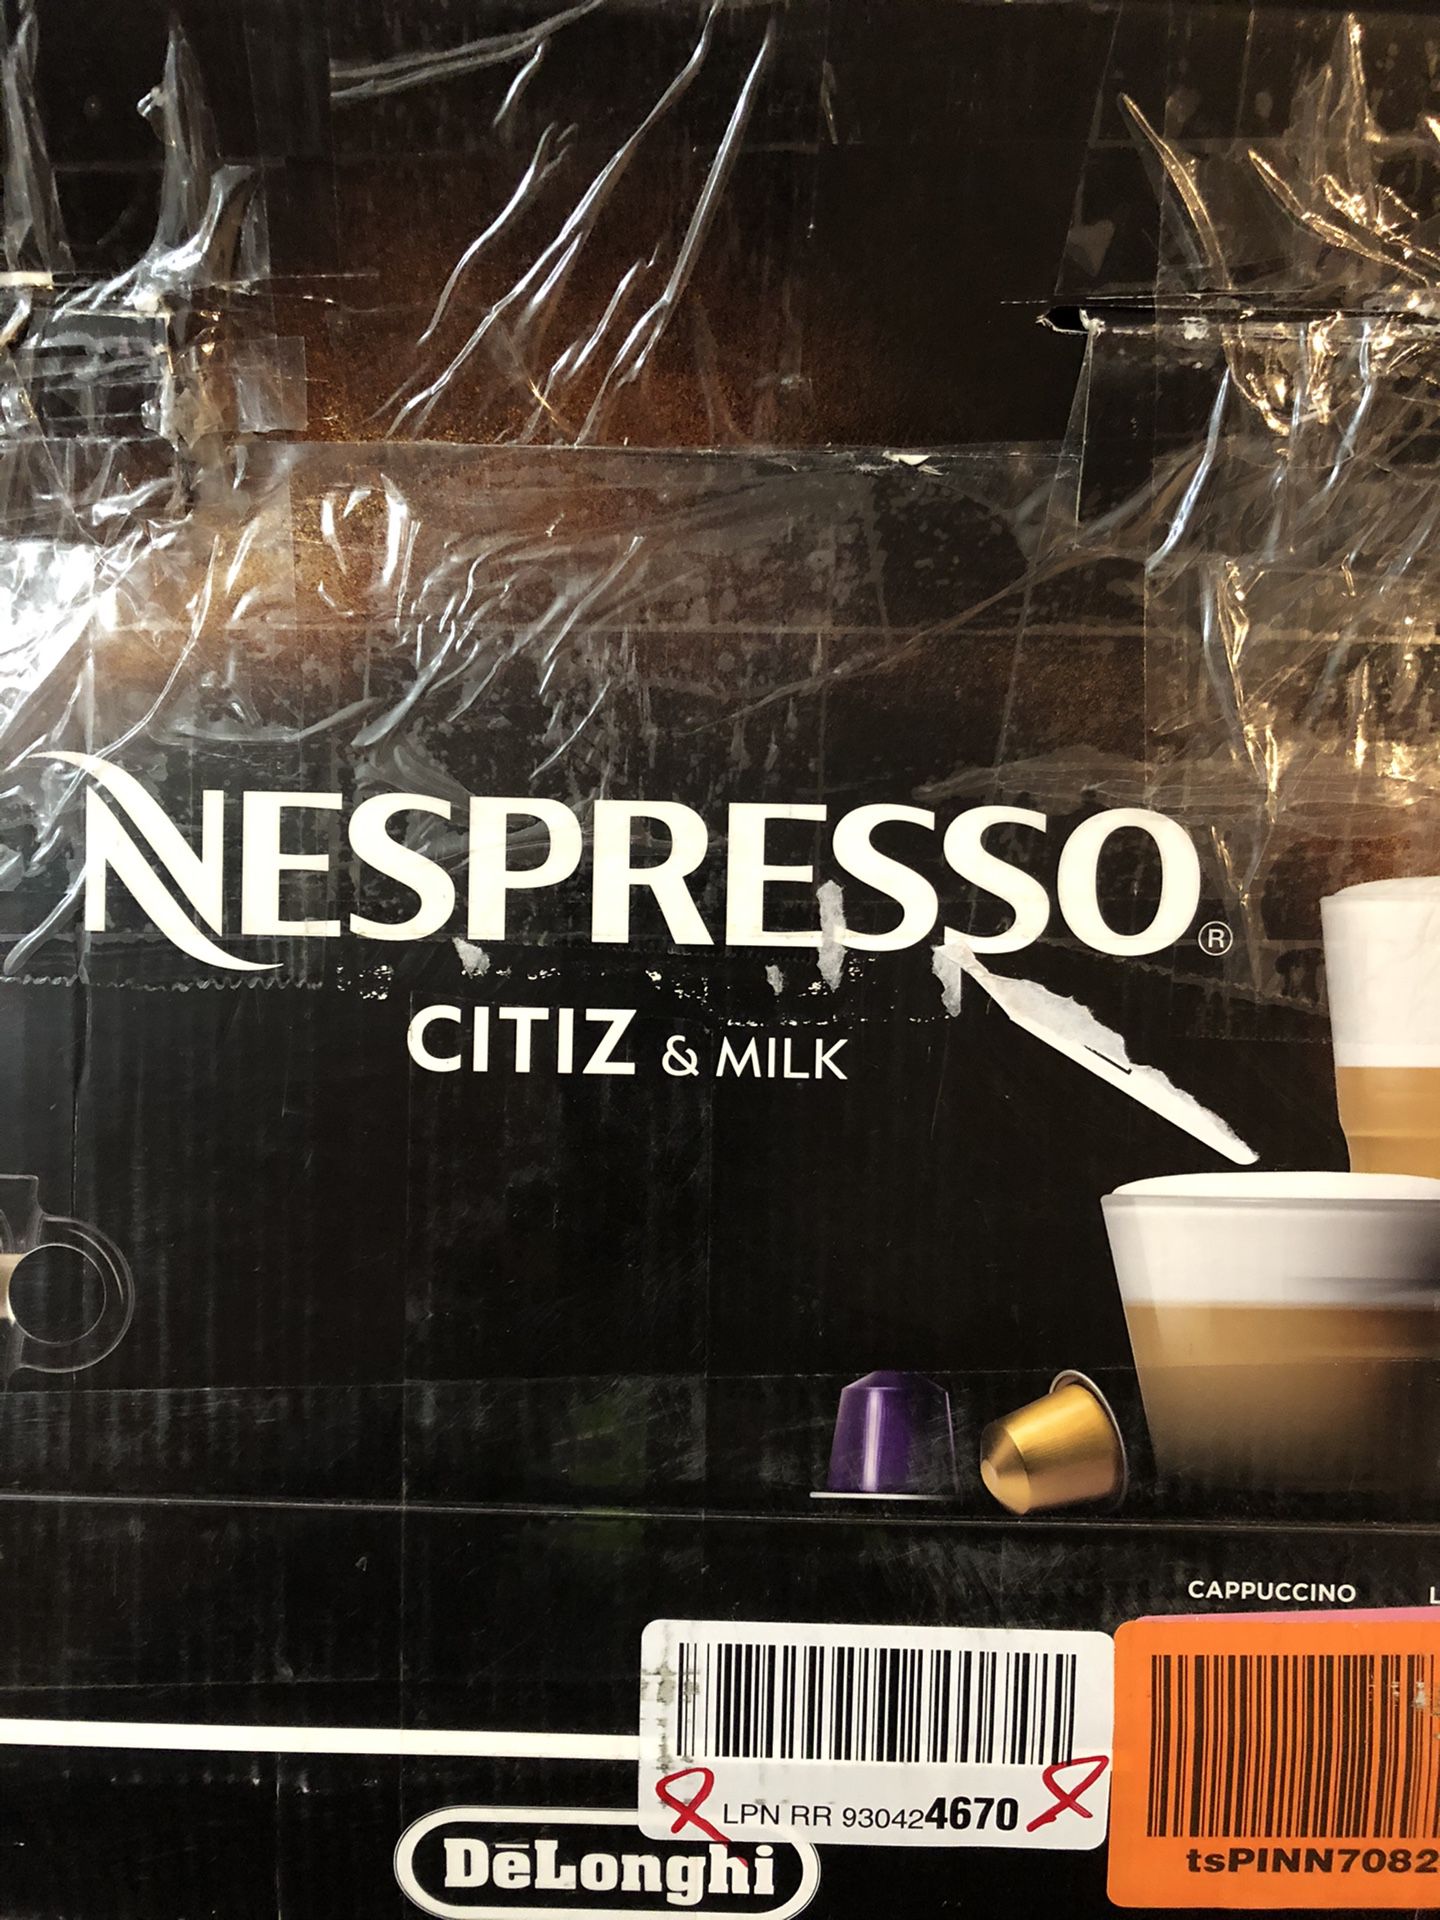 DeLonghi Nespresso Citiz & Milk coffe maker and espresso machine